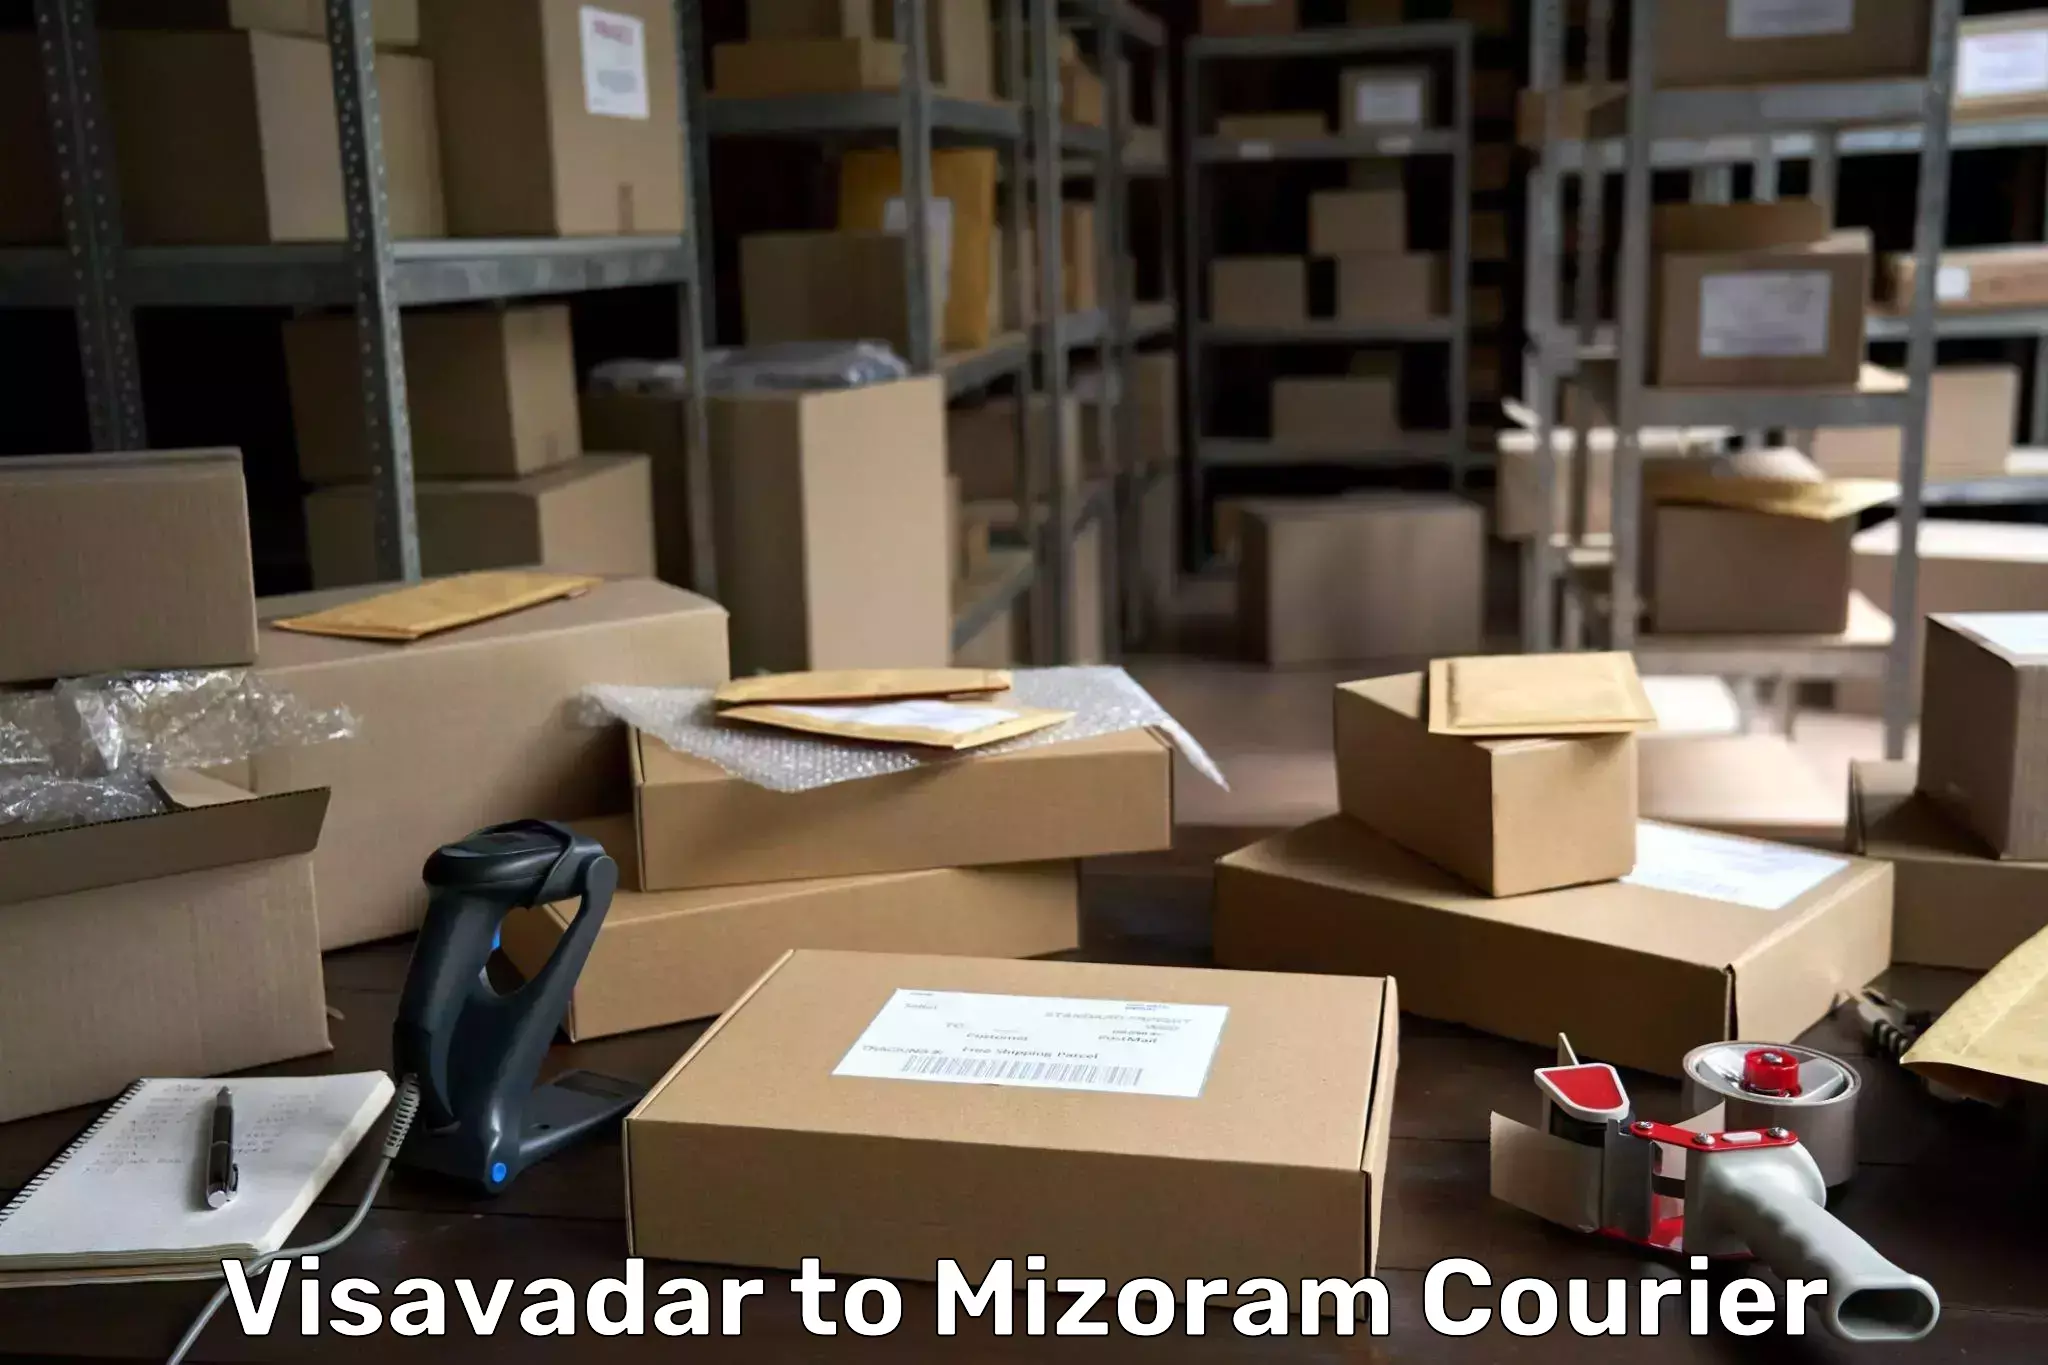 Remote area delivery Visavadar to Mizoram